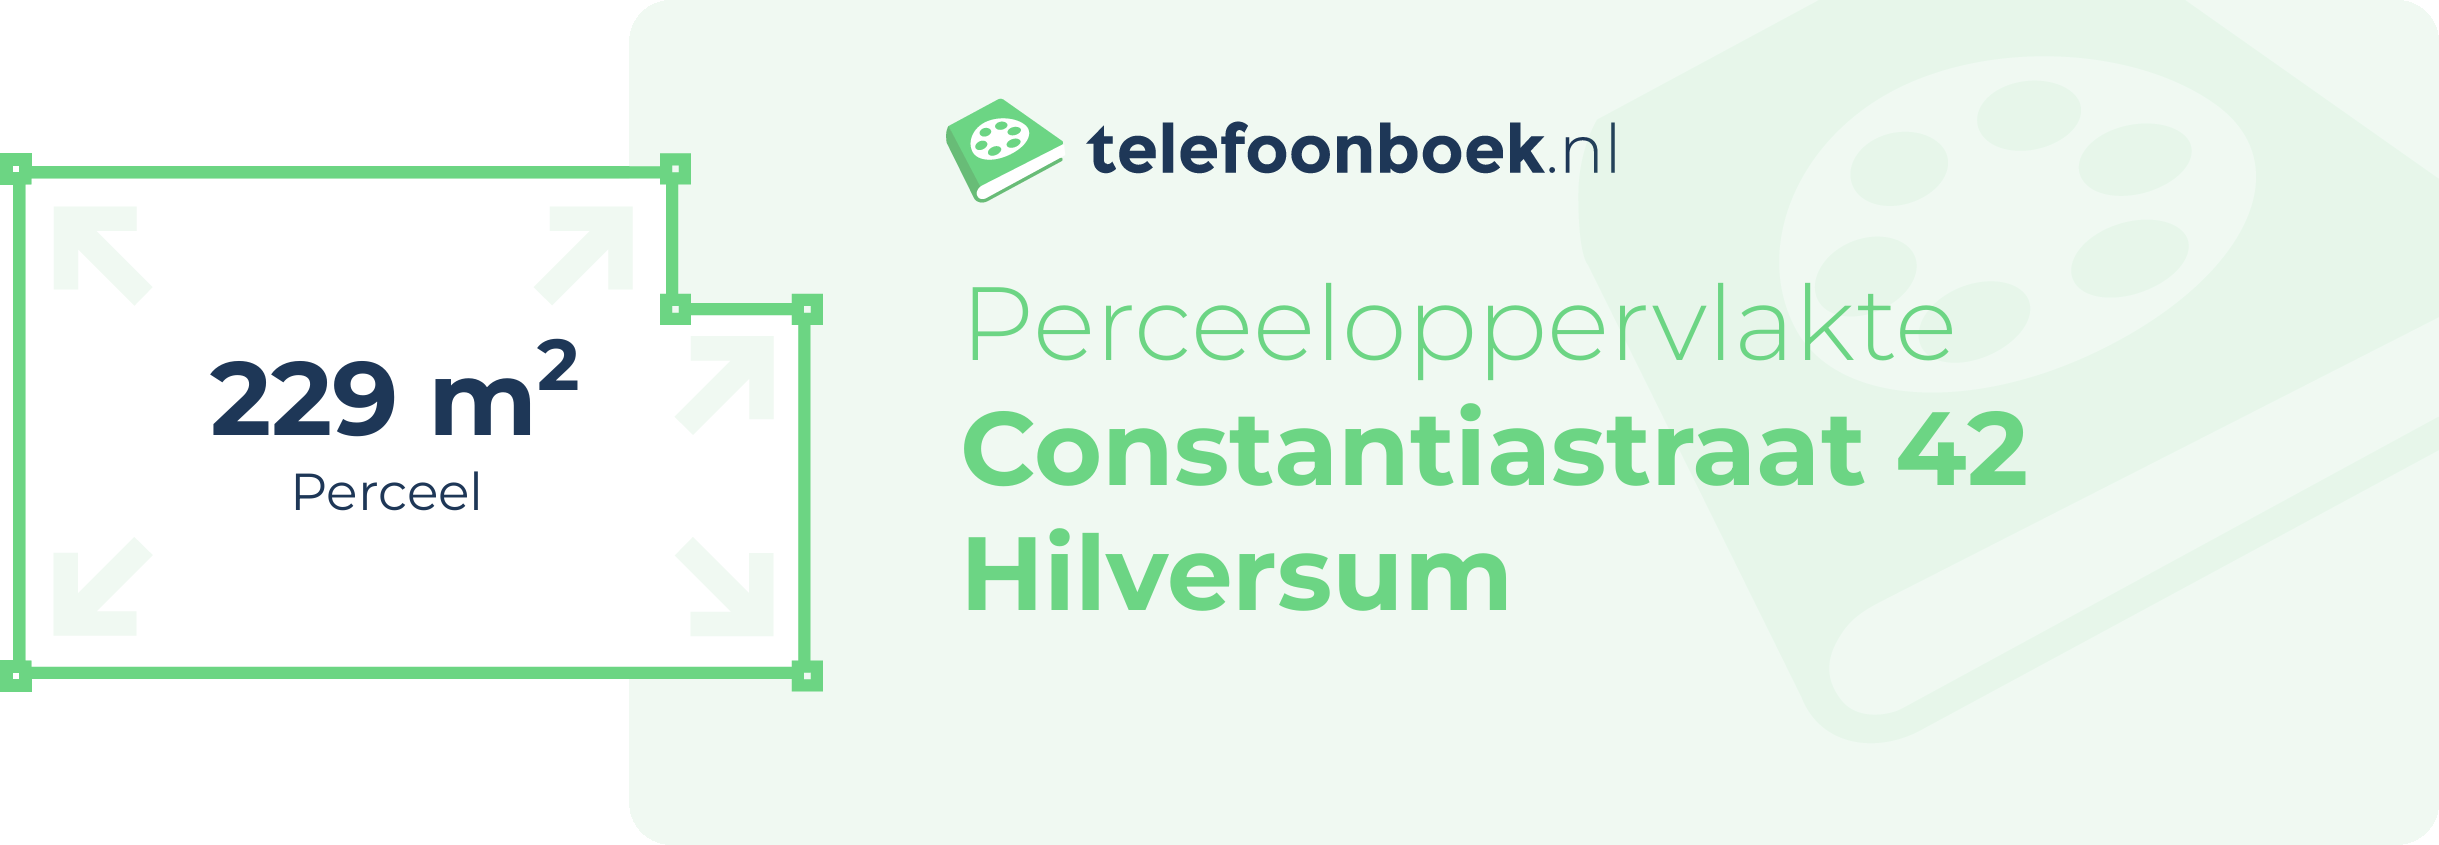 Perceeloppervlakte Constantiastraat 42 Hilversum